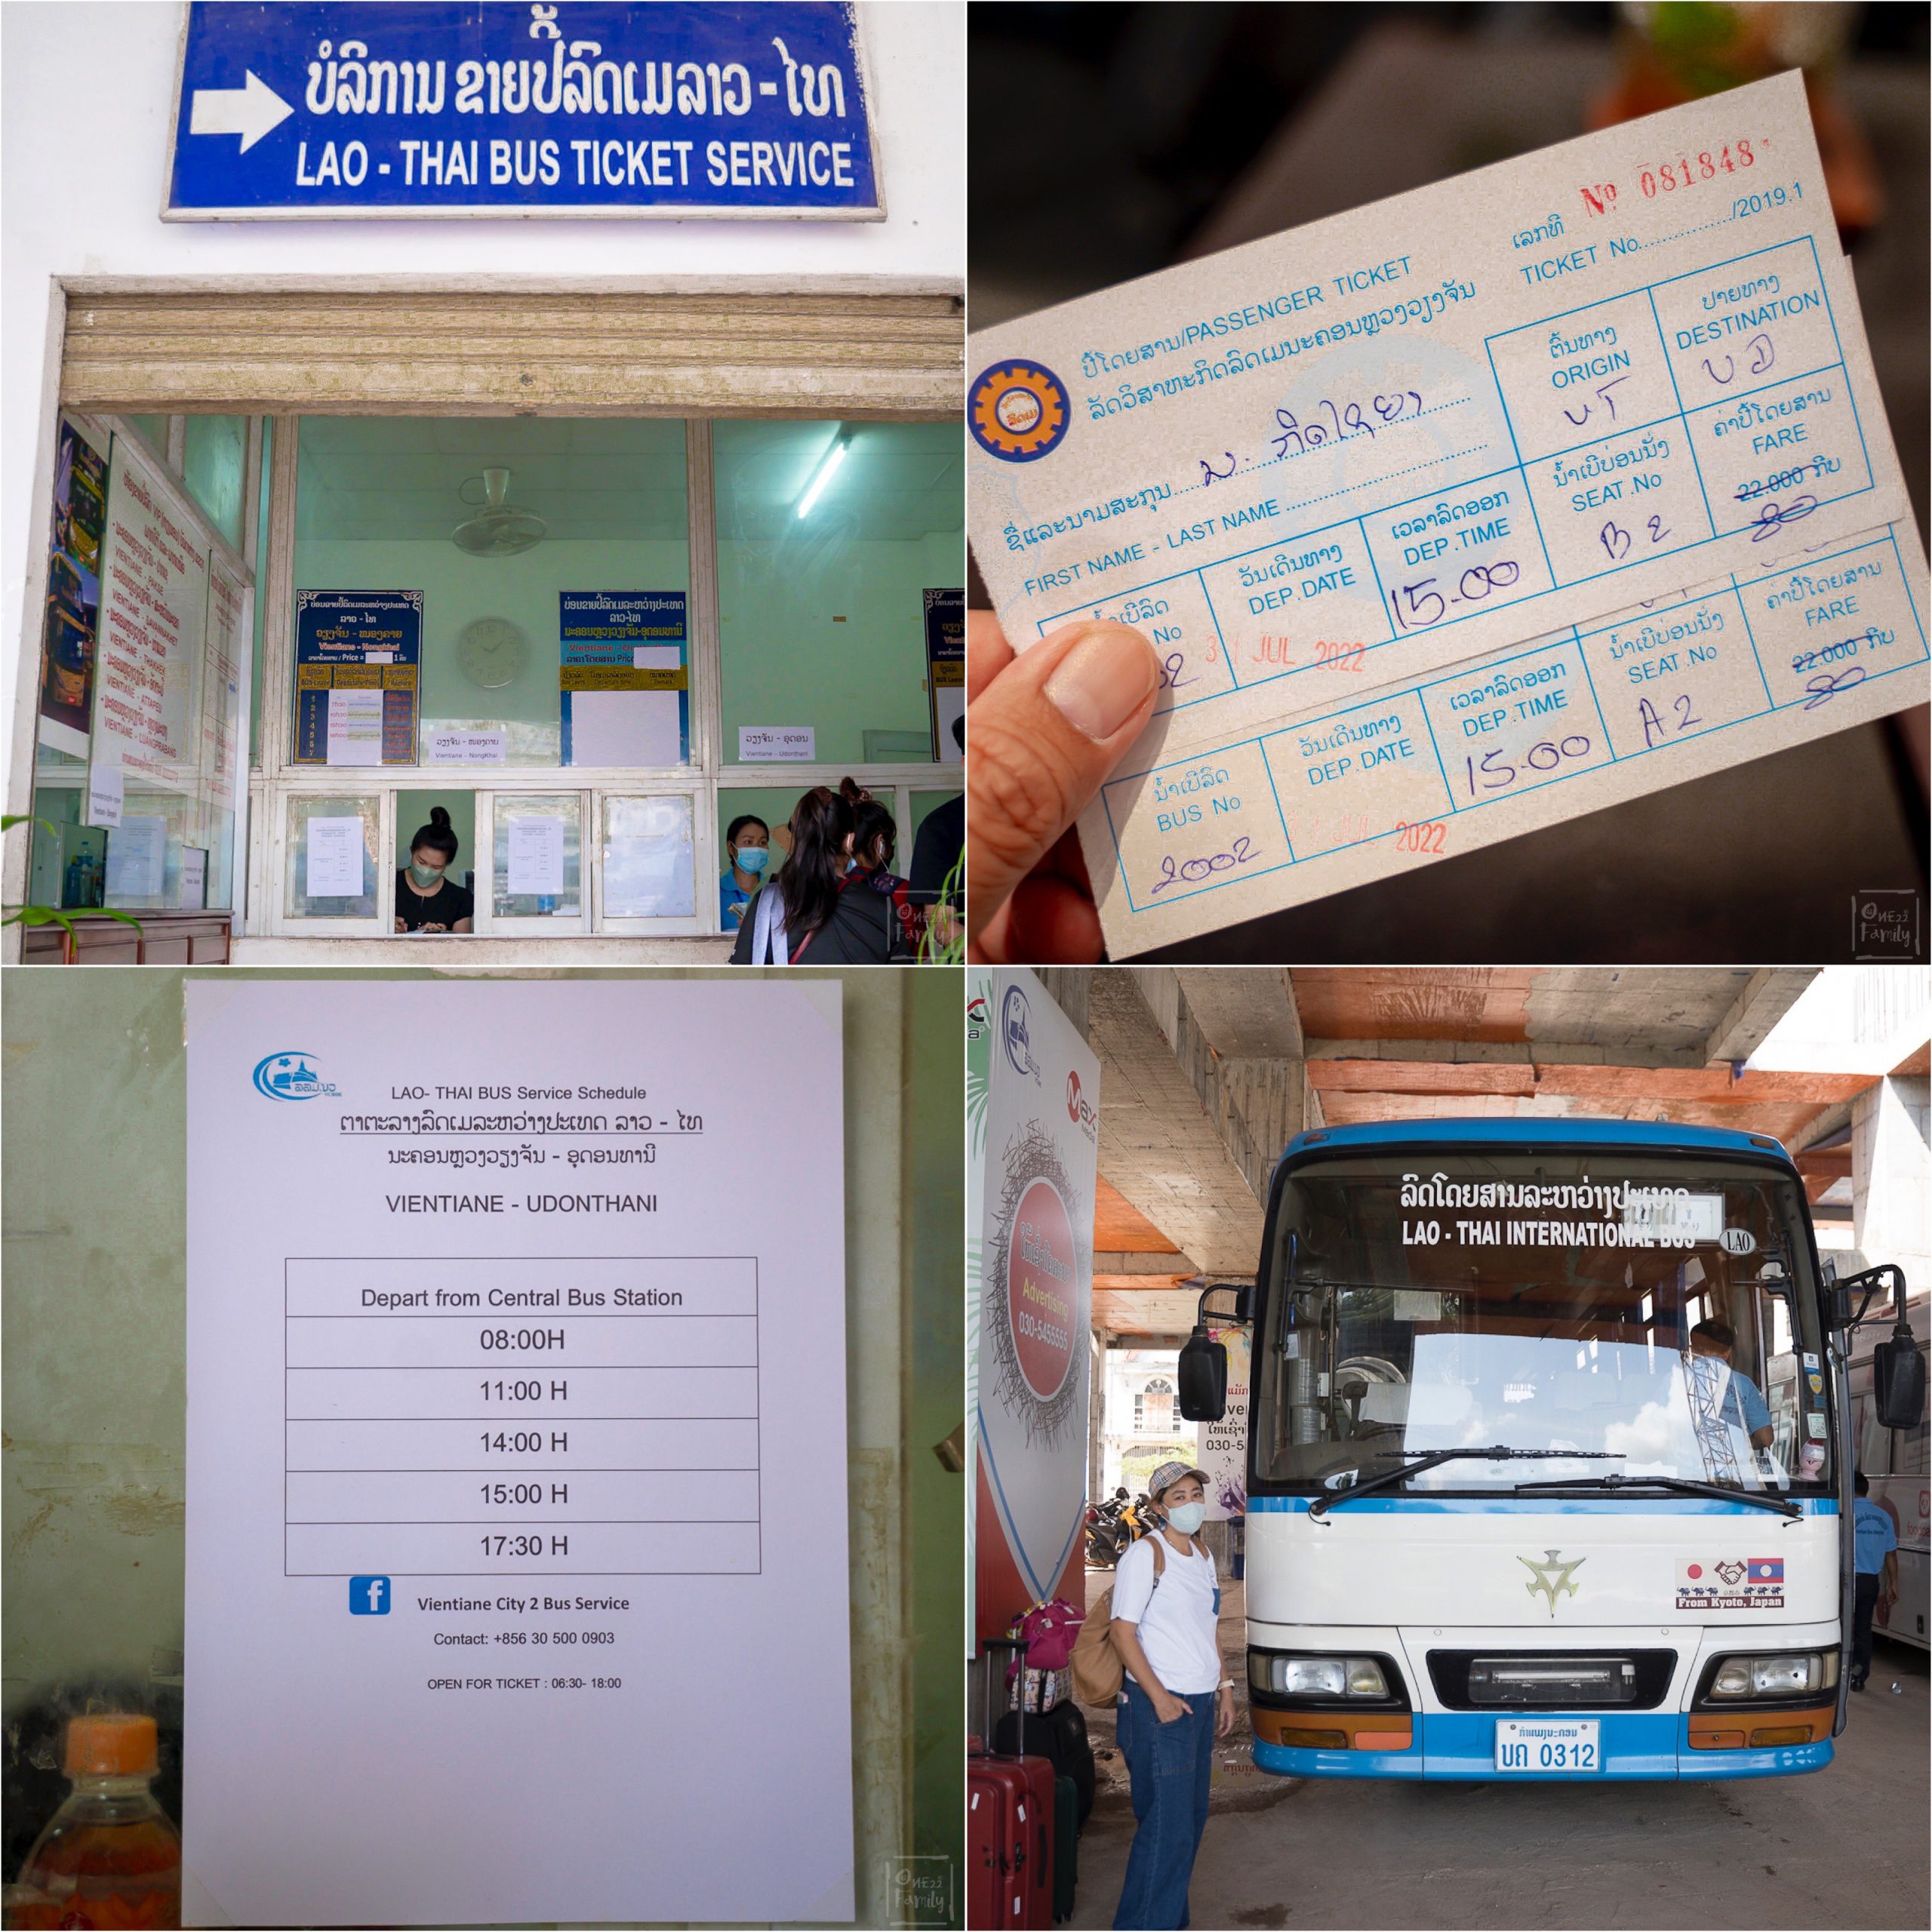 Laos-trip2022,เที่ยวลาวเหนือด้วยรถไฟลาวจีน,วังเวียง,หลวงพระบาง,รถไฟลาวจีน,เข้าลาว,ทรูมูฟ,cigna